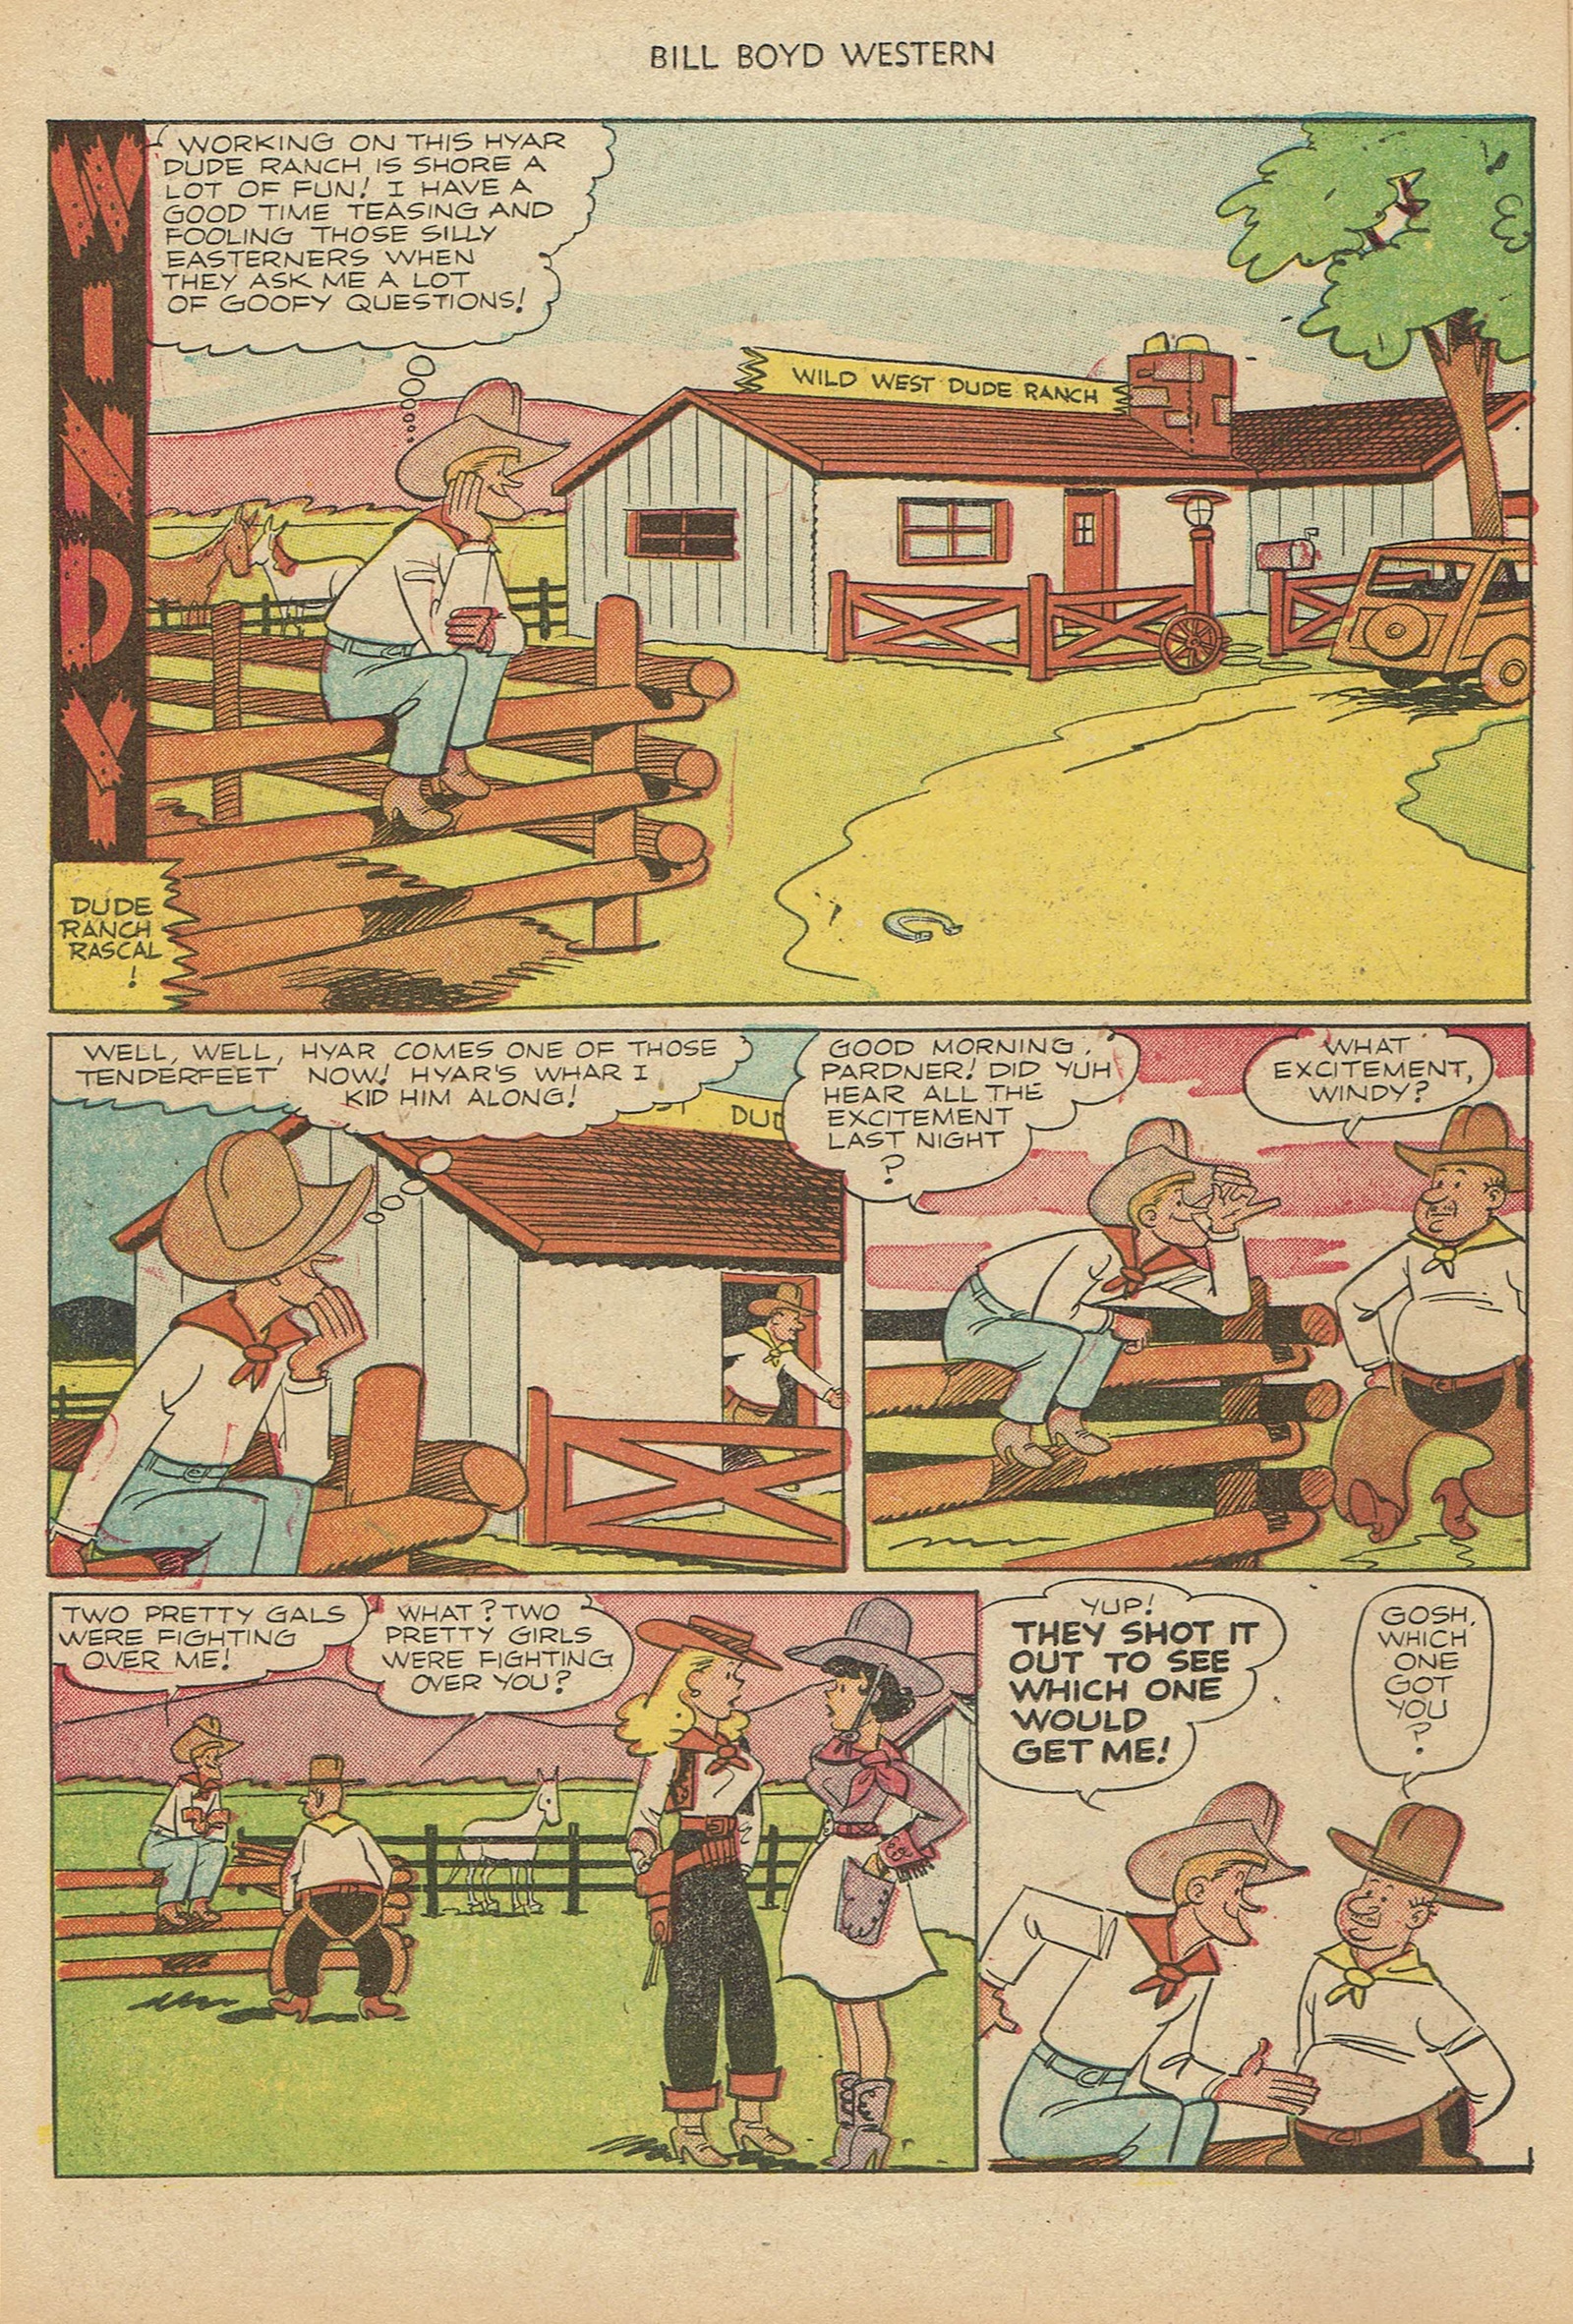 Read online Bill Boyd Western comic -  Issue #18 - 14